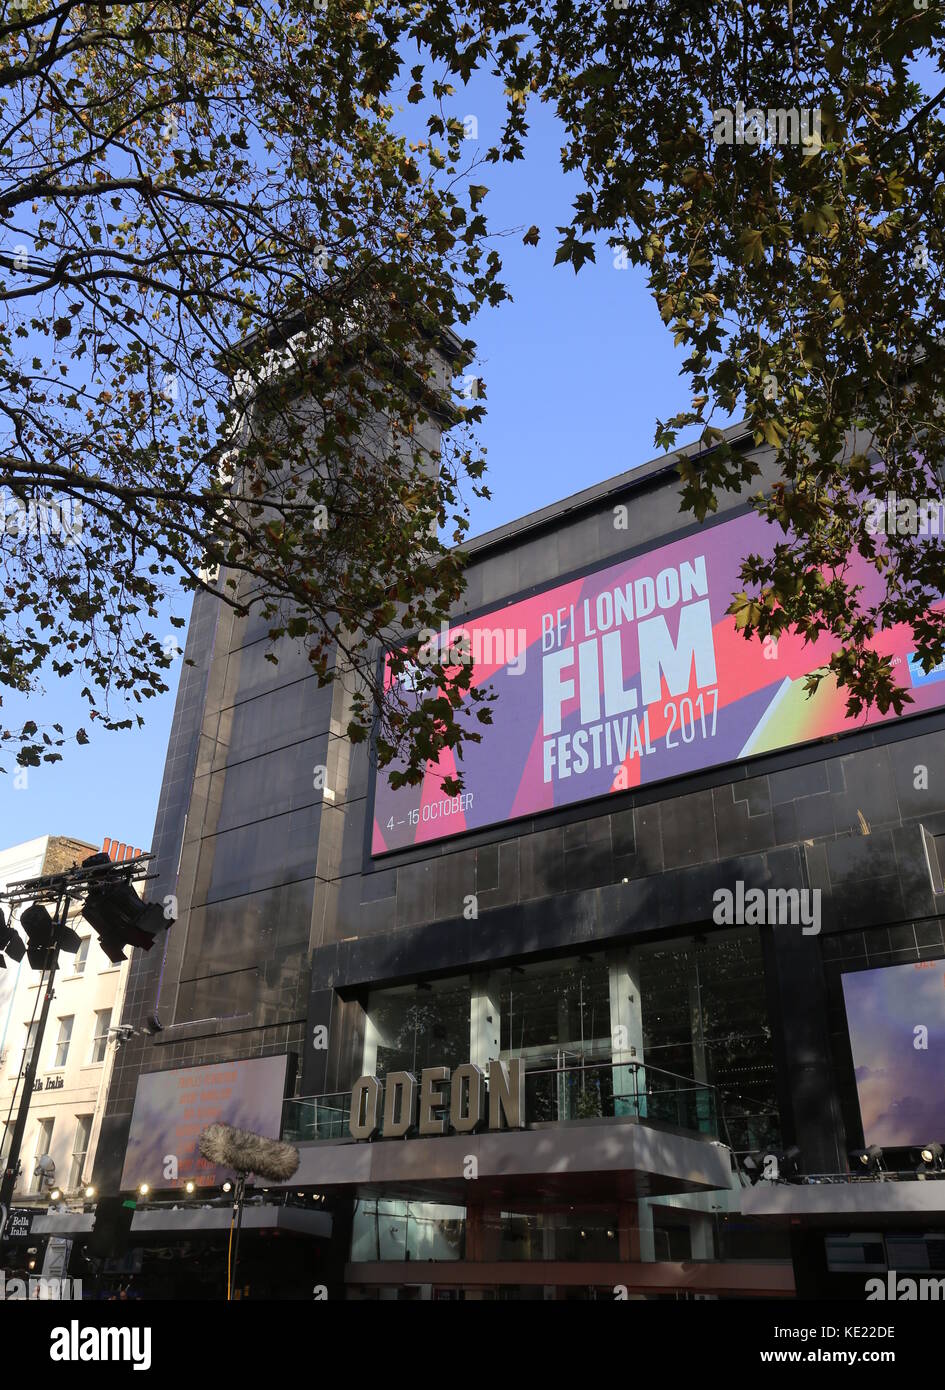 La soirée de clôture du gala BFI London Film Festival 2017 à Leicester Square London, UK Octobre 2017 Banque D'Images